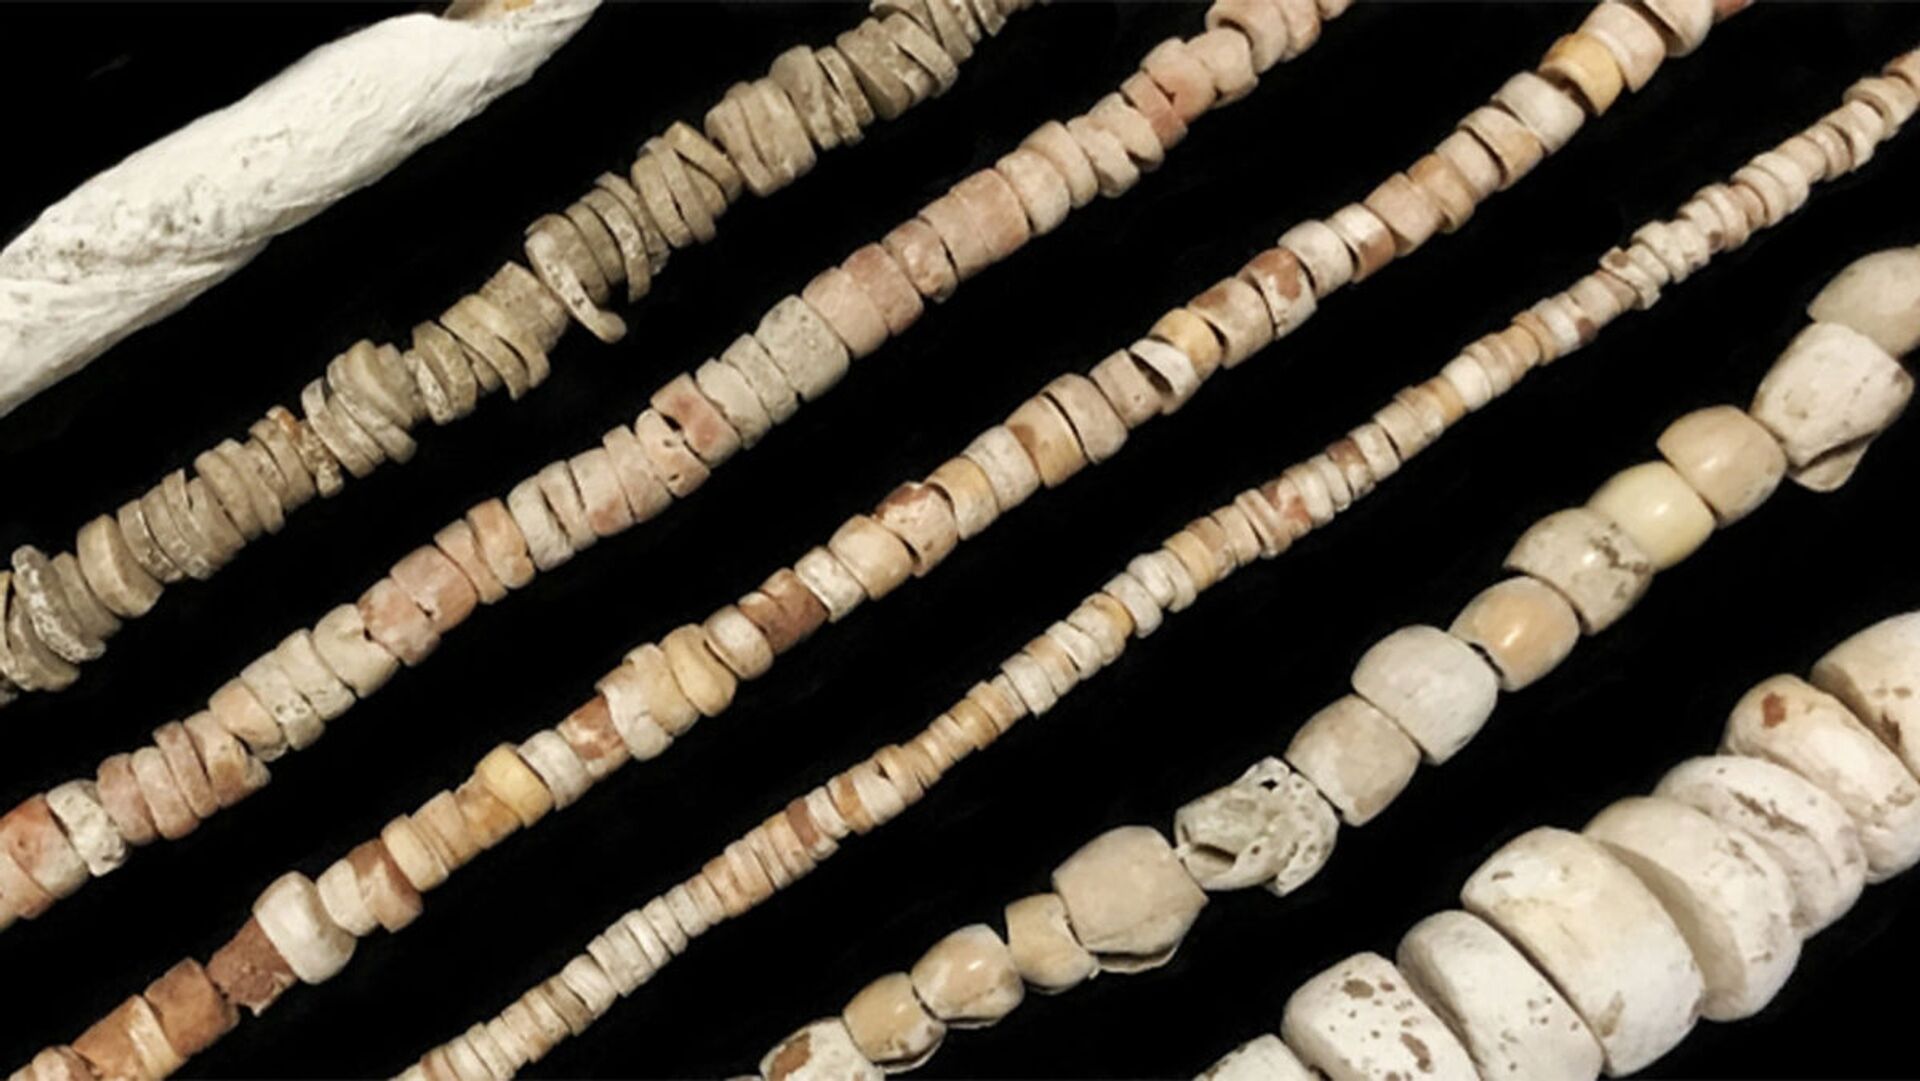 Arqueólogos podem ter descoberto a primeira moeda dos povos nativos da América do Norte (FOTO) - Sputnik Brasil, 1920, 03.02.2021